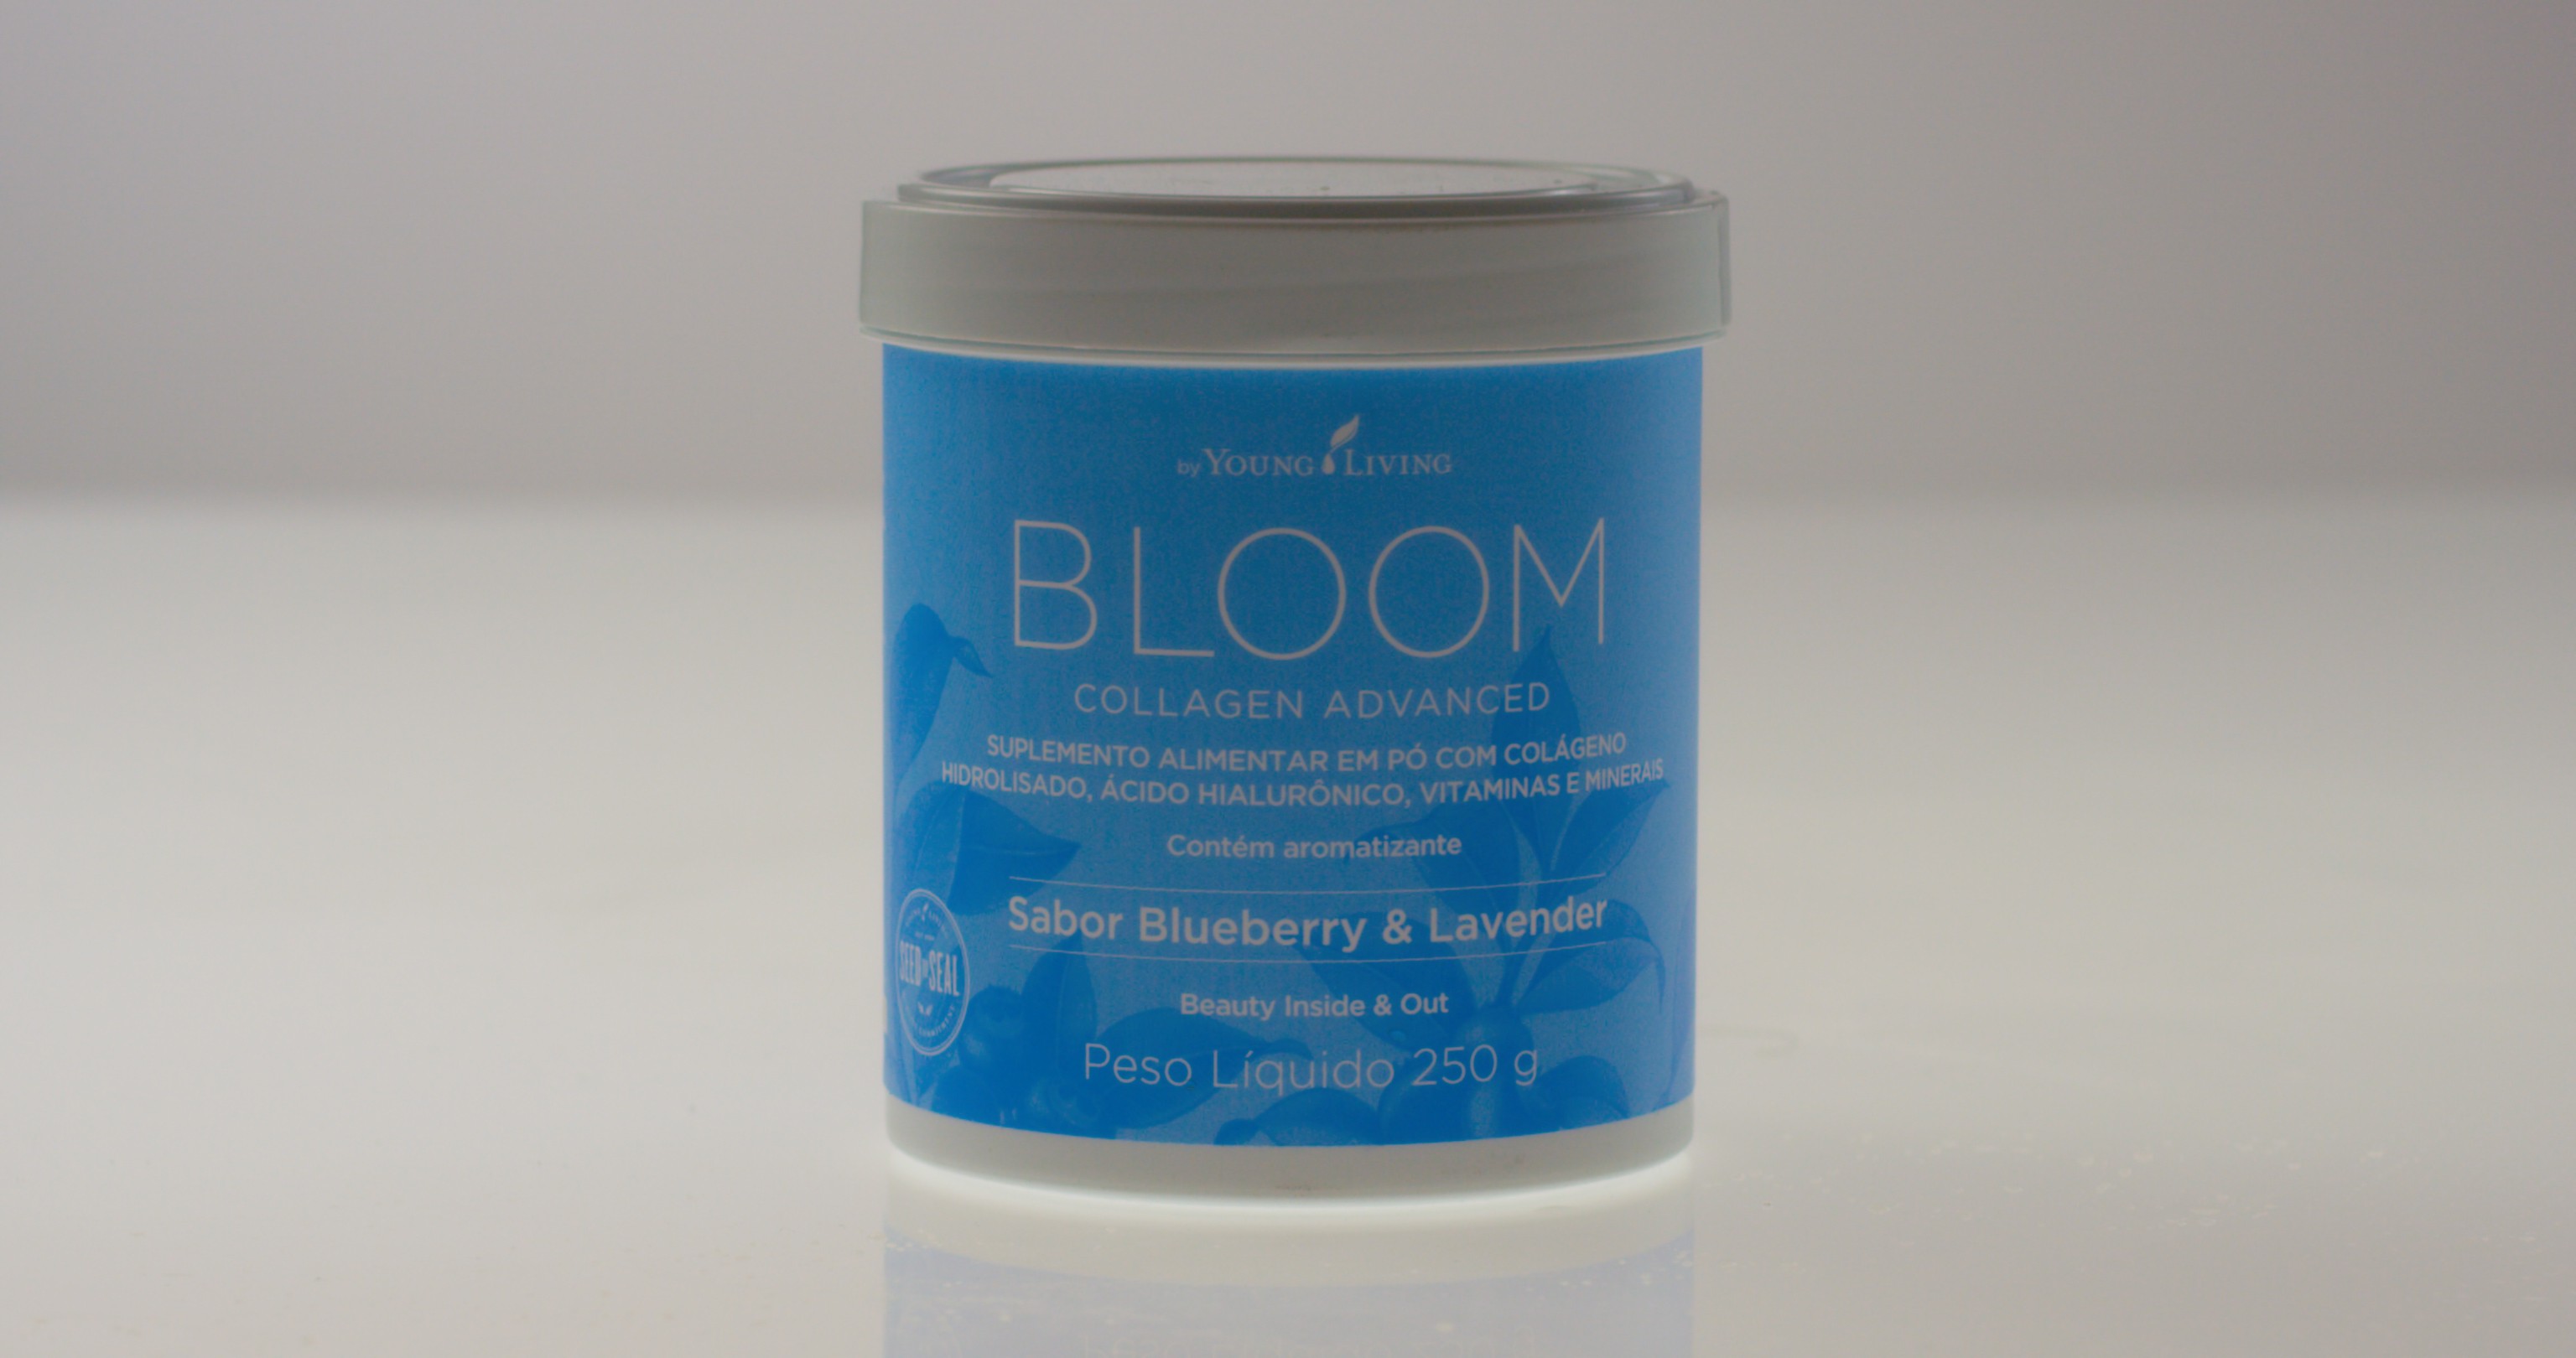 Bloom Collagen Advance, Young Living (Foto: Divulgação)